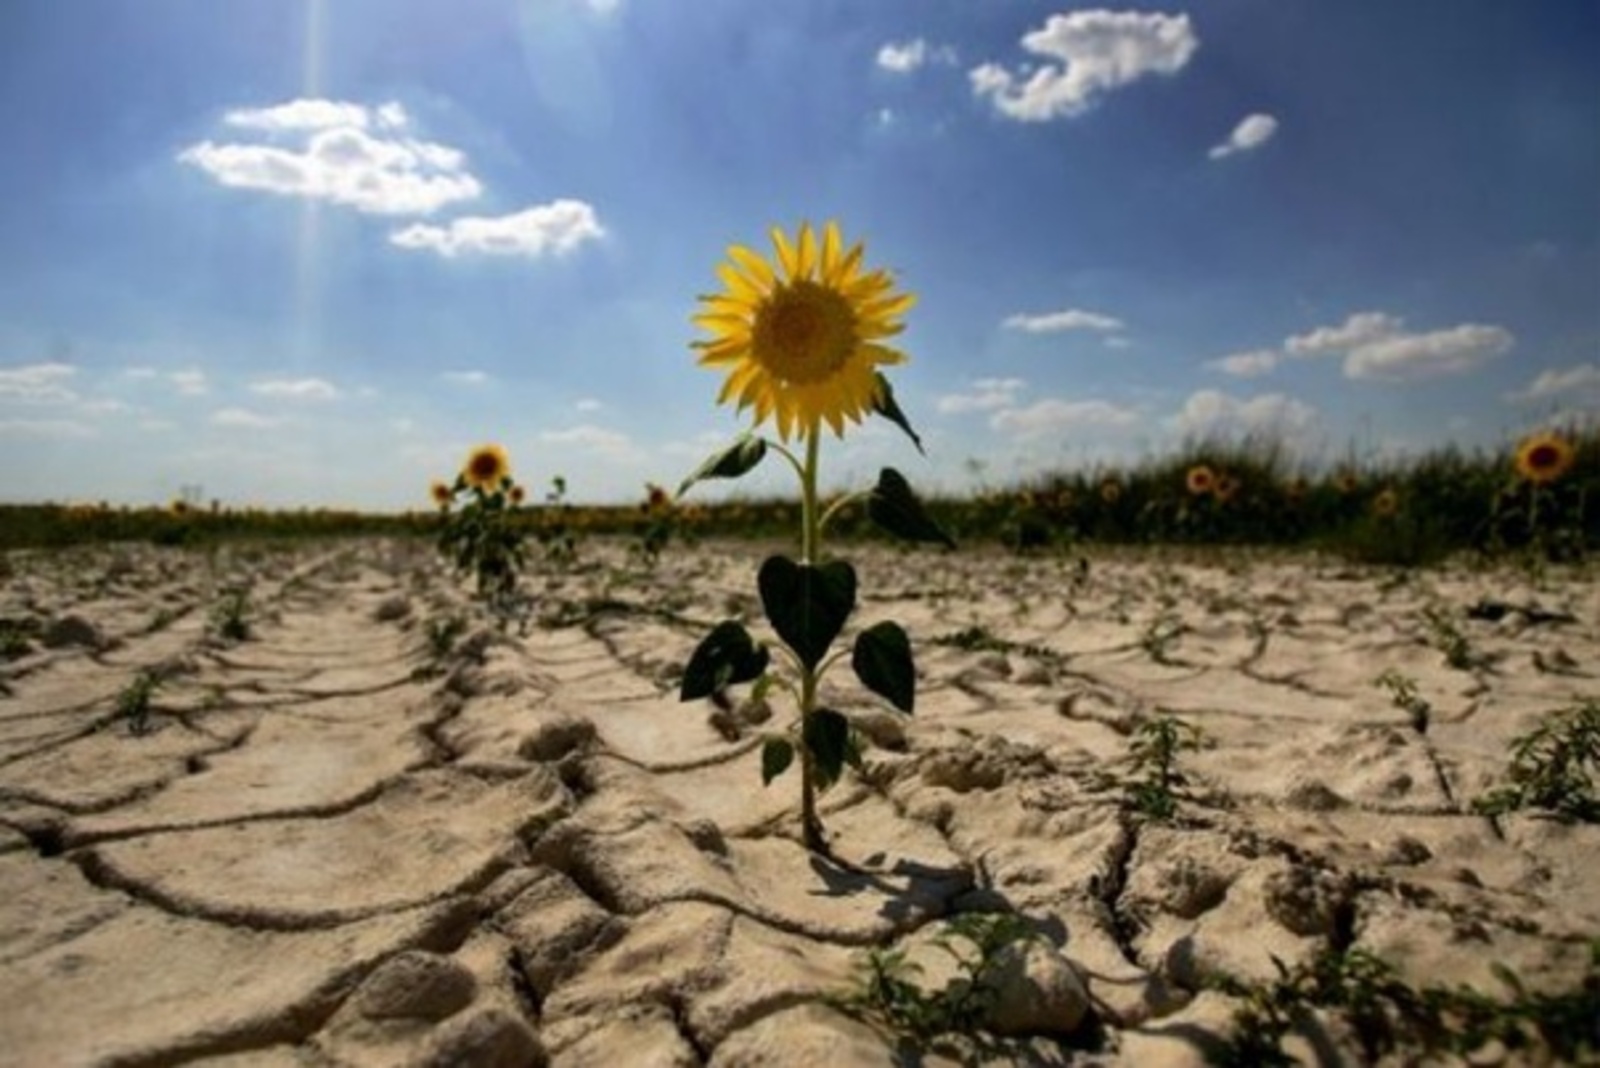 17 июня – Всемирный день борьбы с опустыниванием и засухой